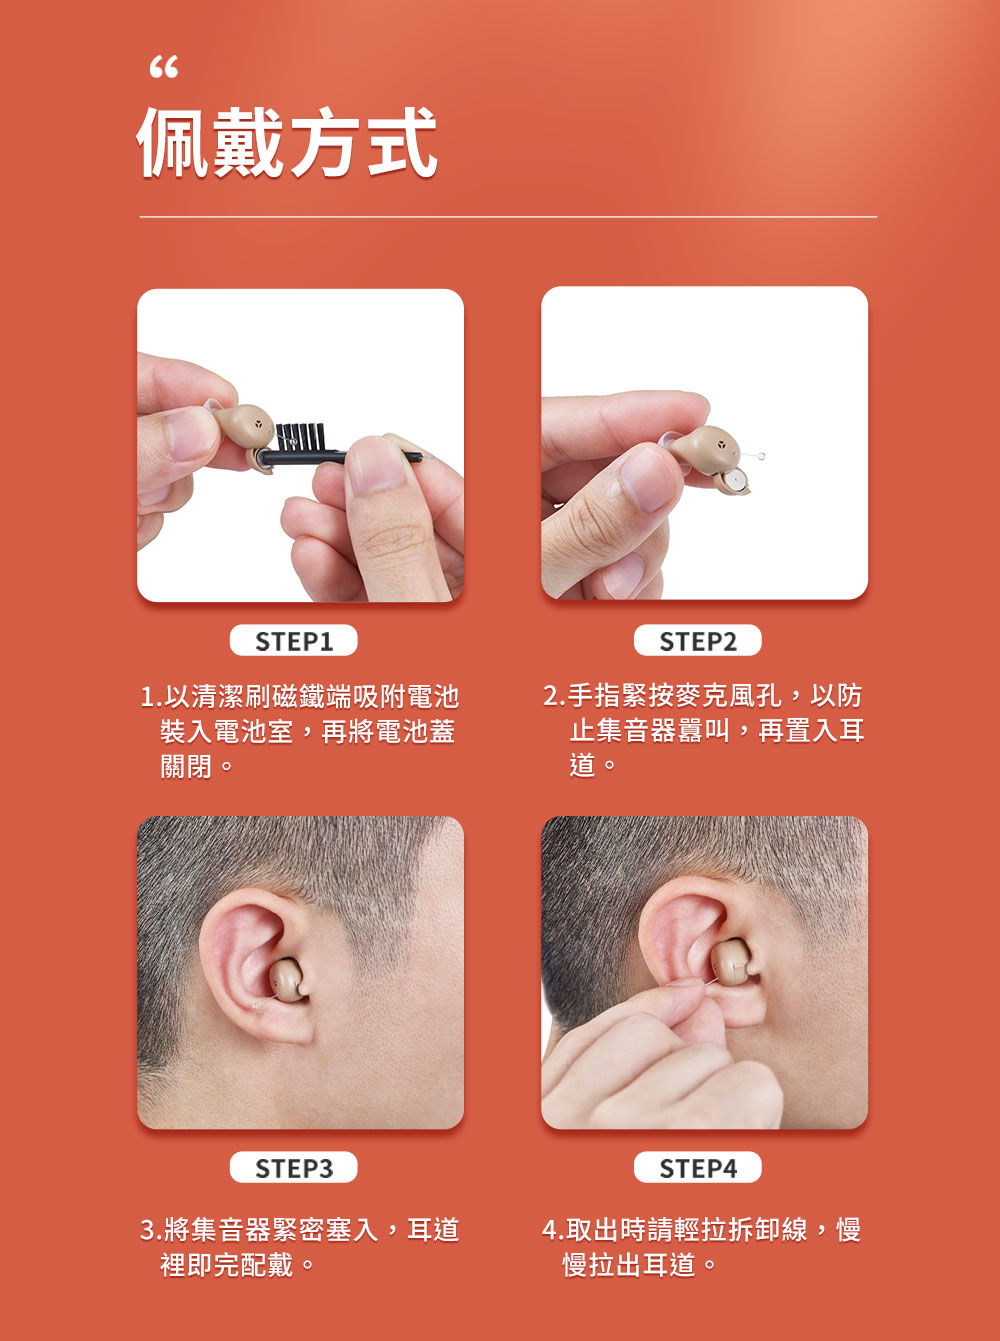 耳寶,6SY5,補助資訊,助聽器